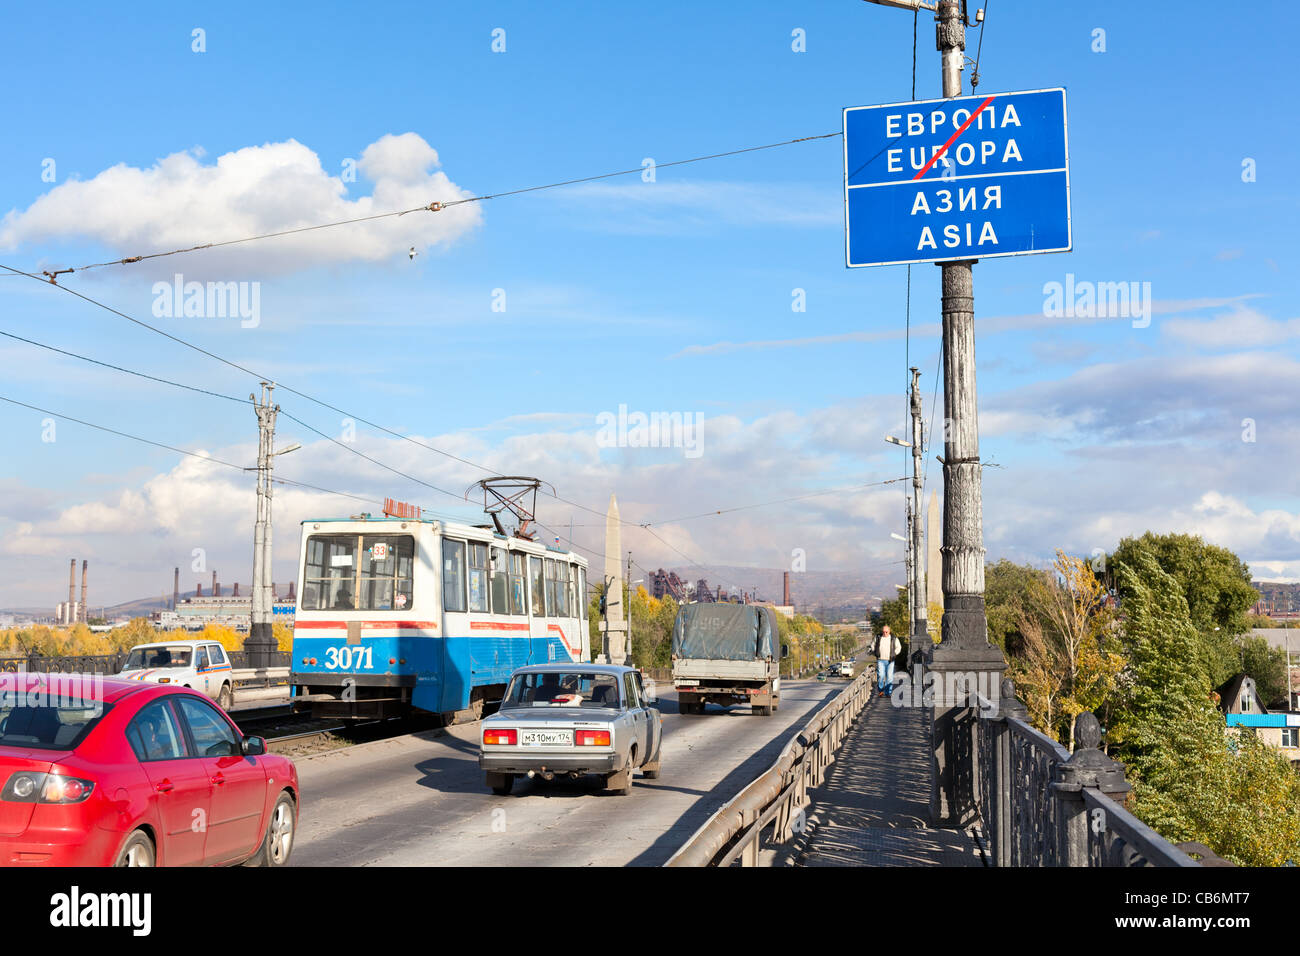 Cartello stradale su Europa ed Asia frontiera nel fiume Ural. Esso si trova sul ponte di veicolare in città. Unità di veicoli su strada. Ural, Magnitogorsk, Russia Foto Stock